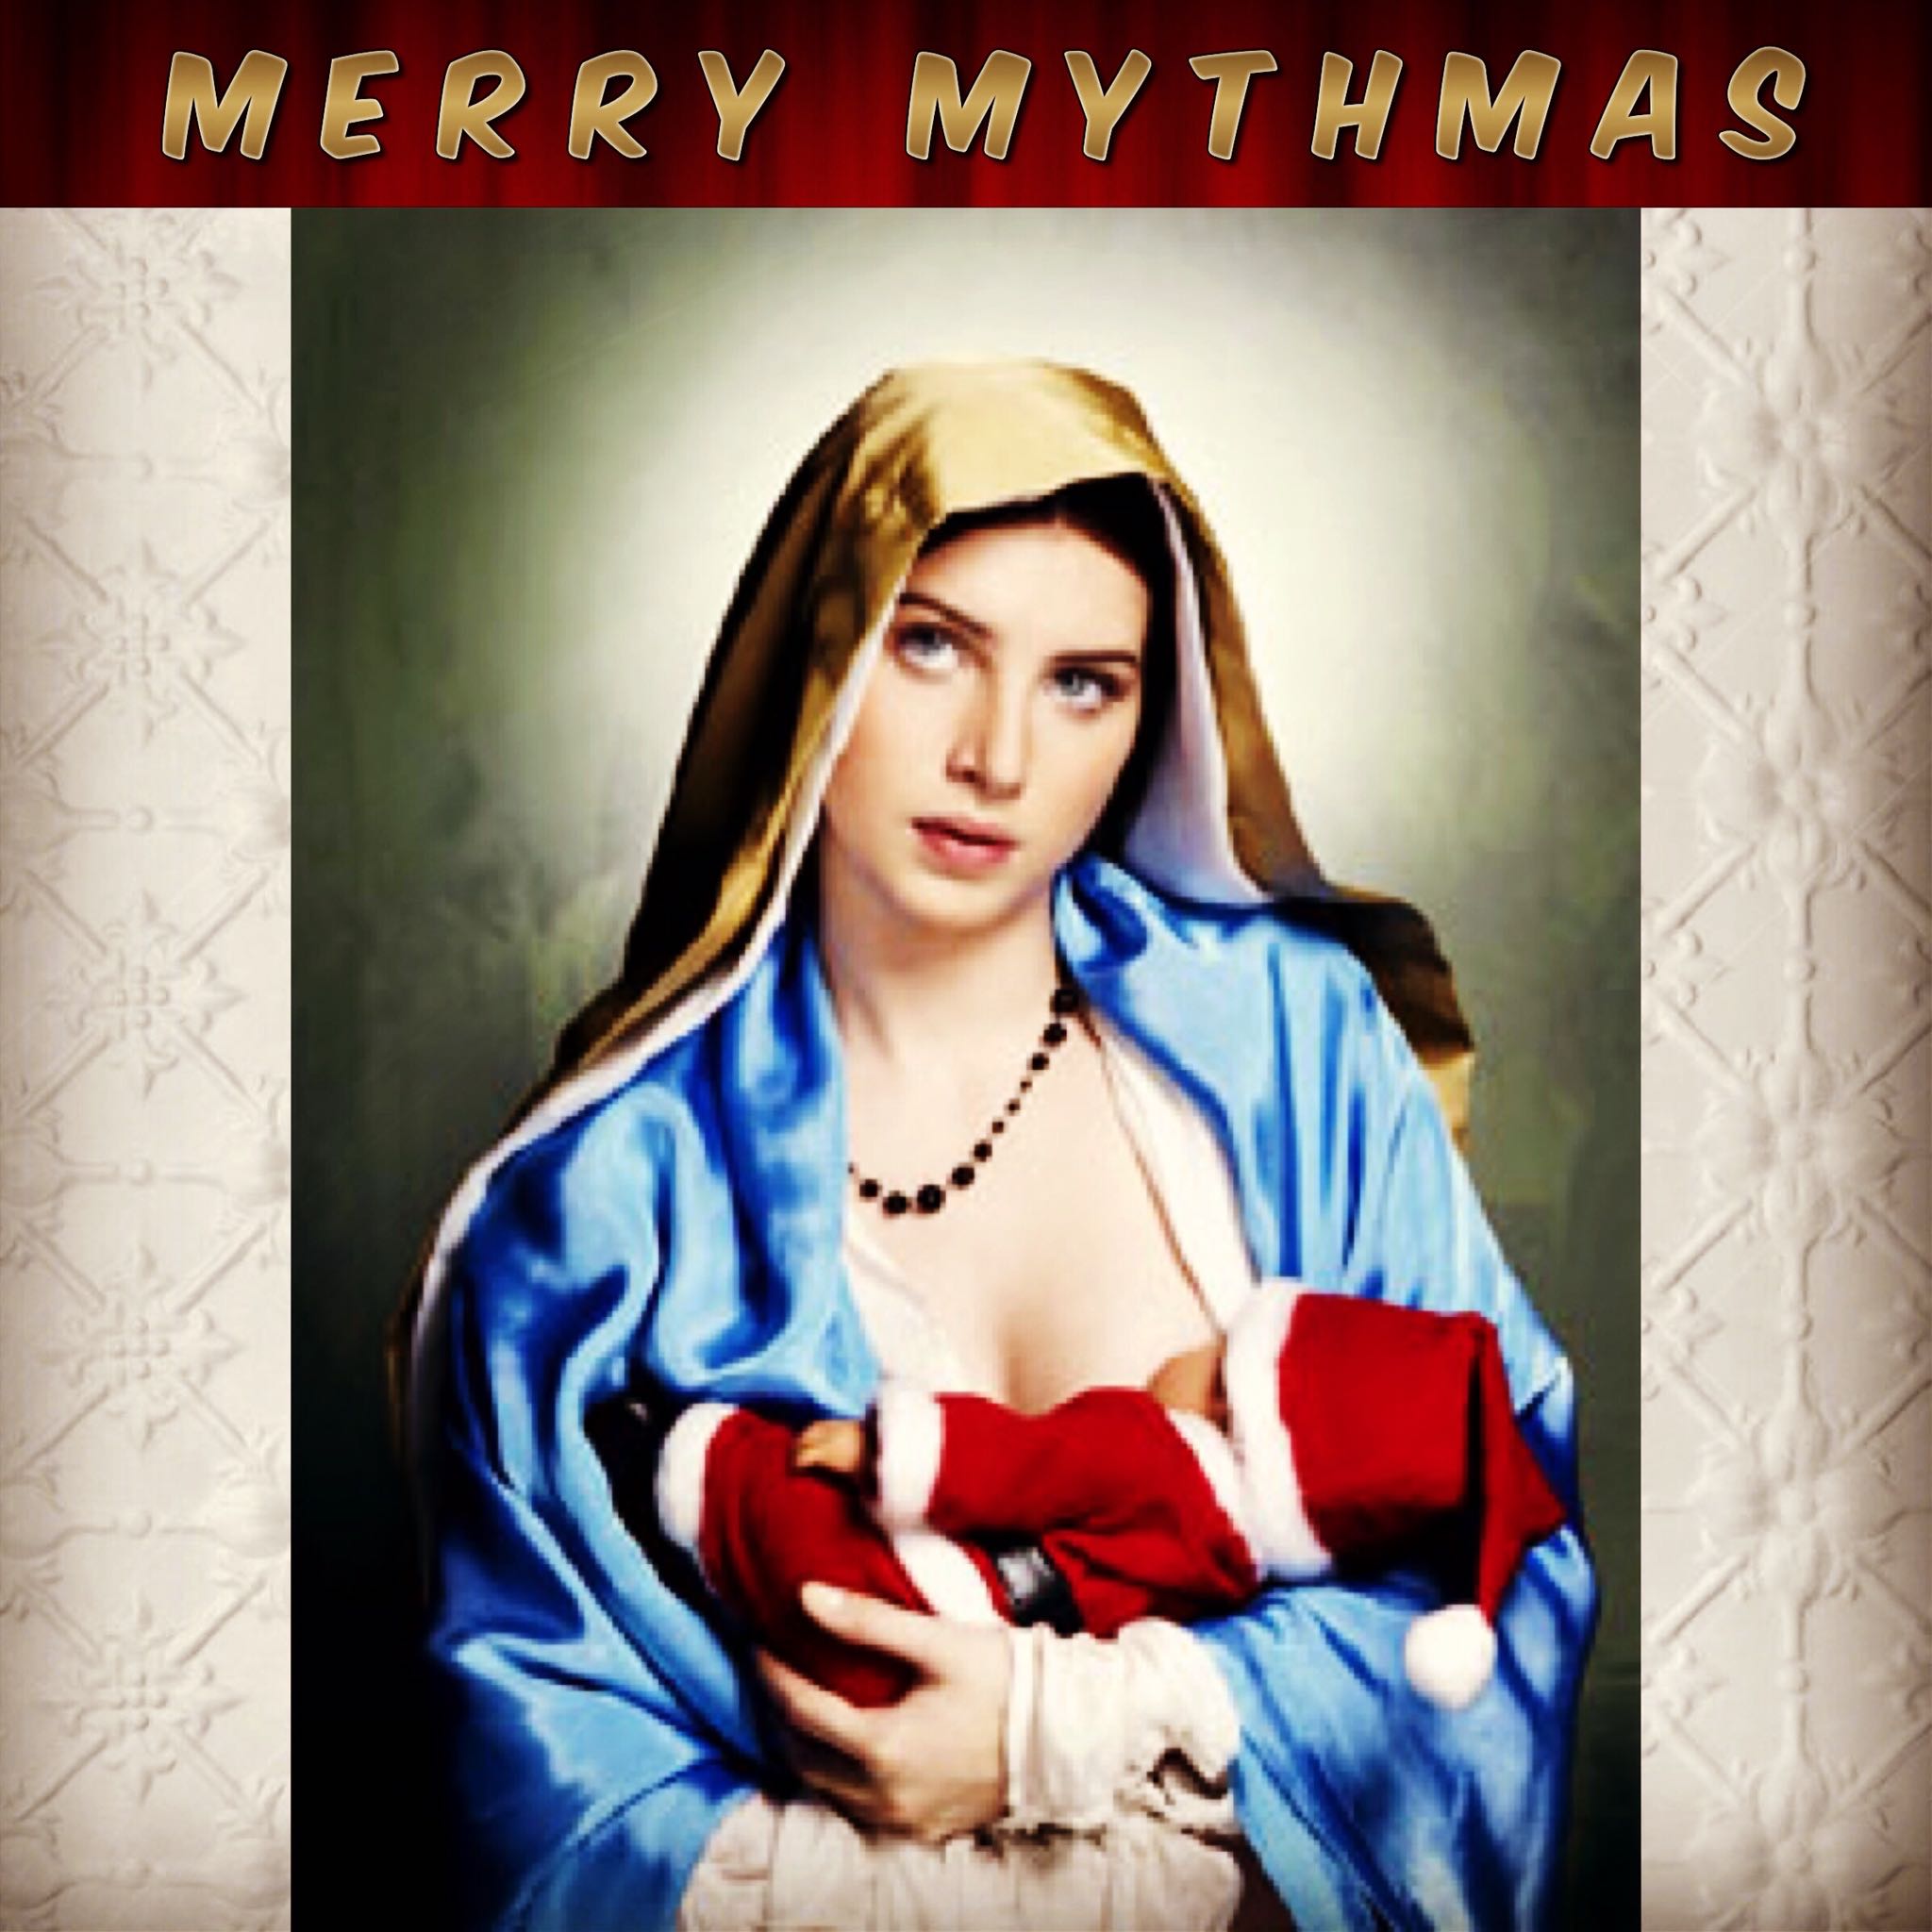 merry mythmas